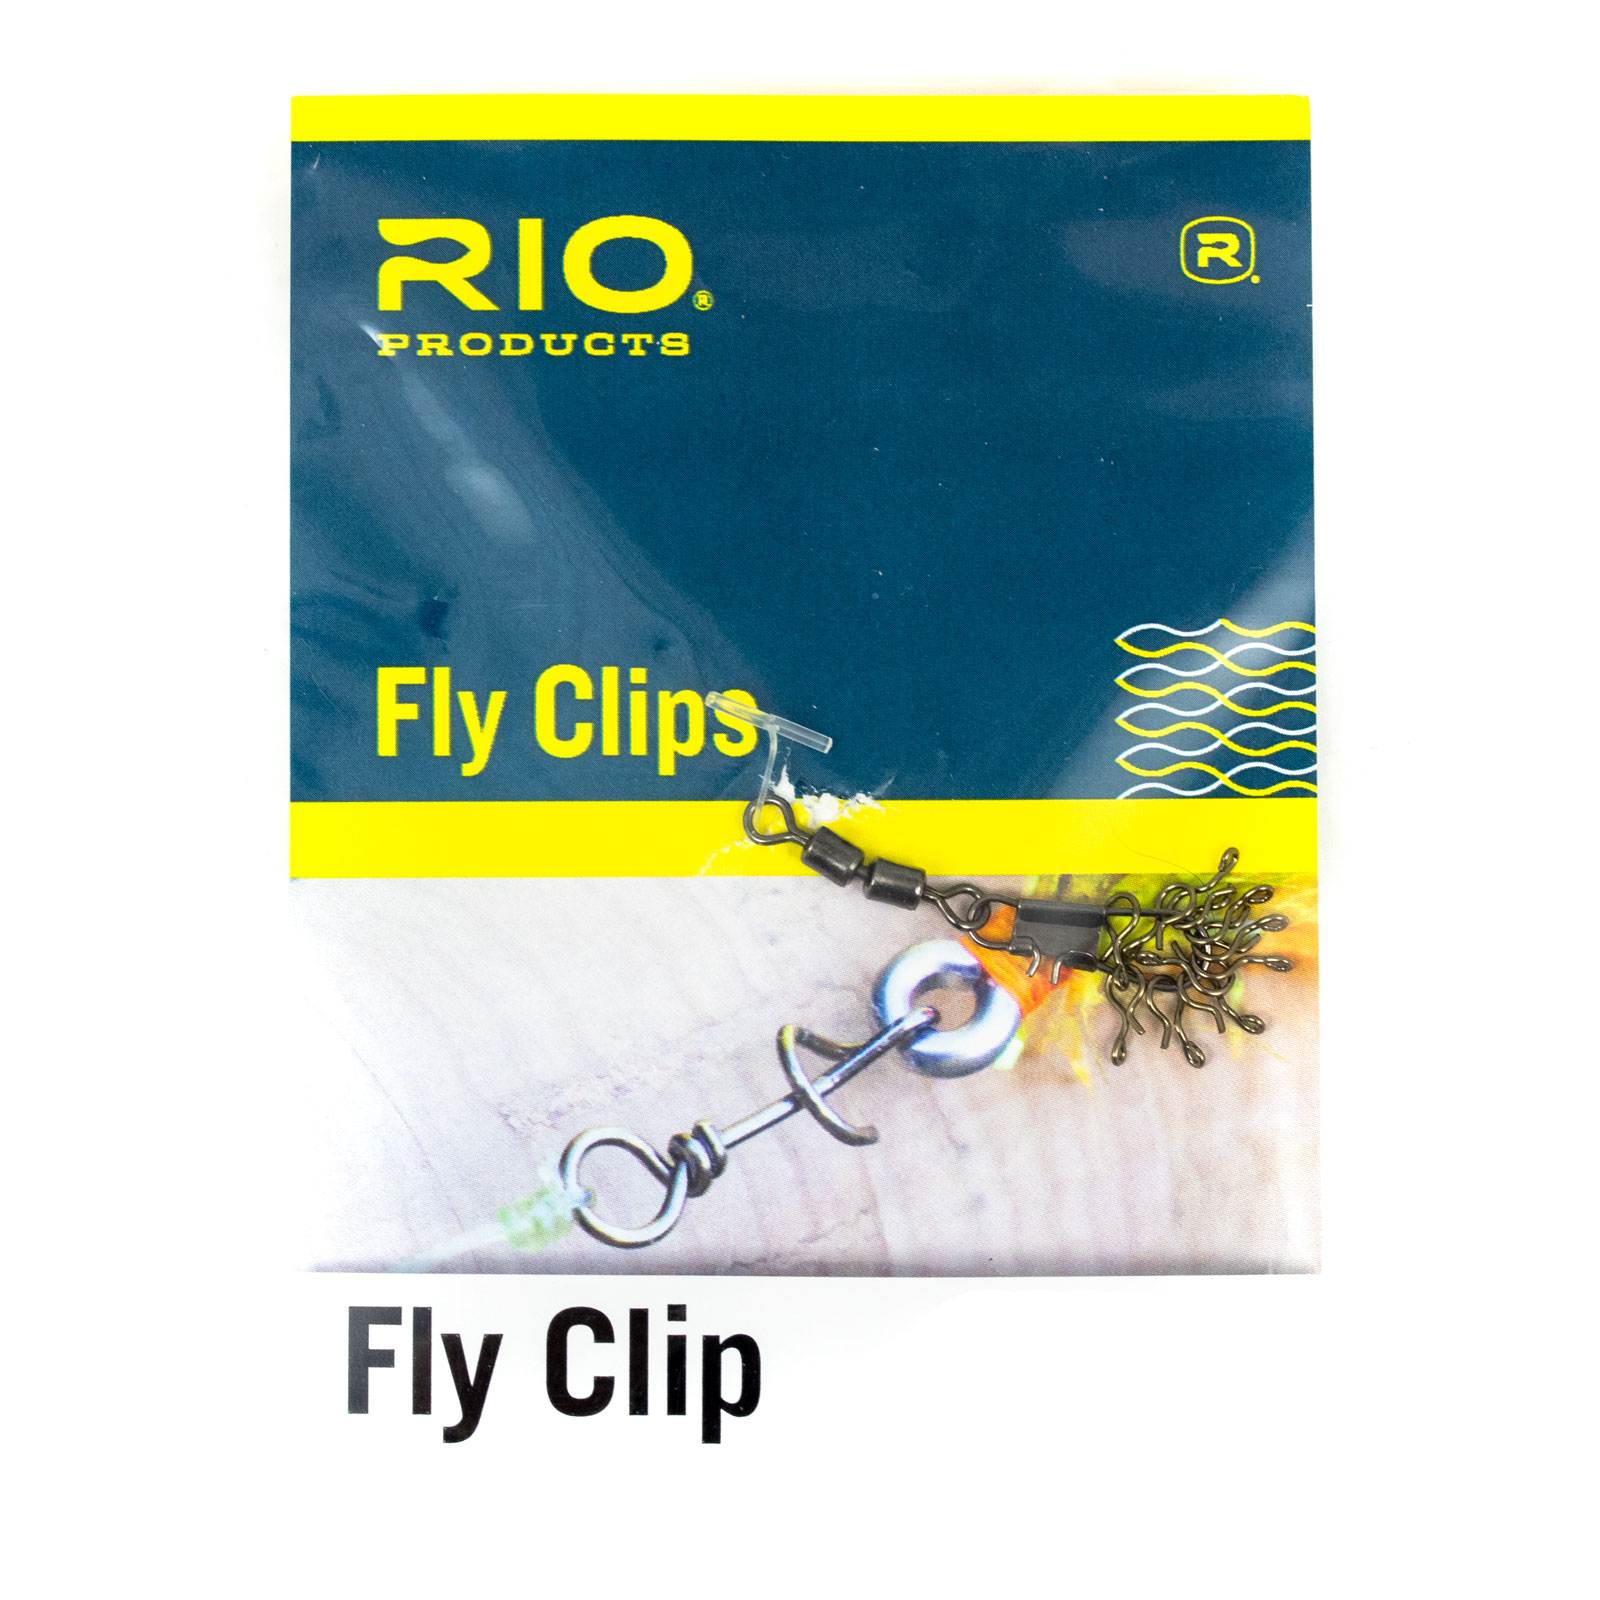 RIO Twist Clips